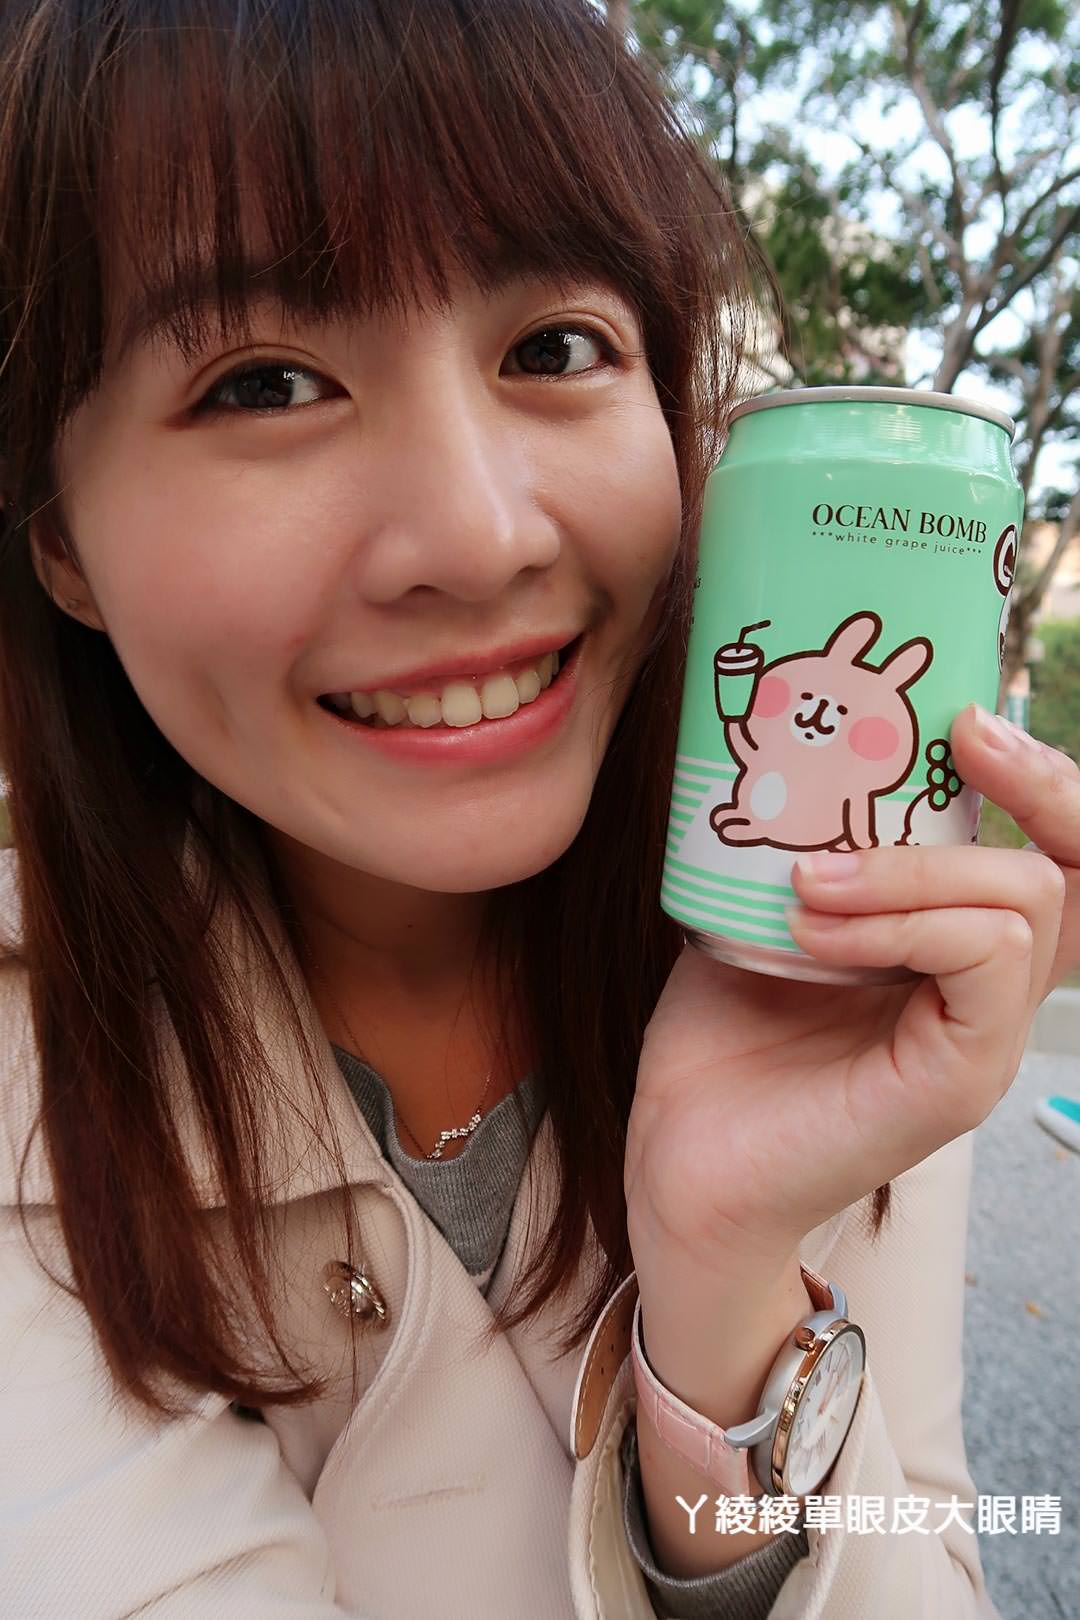 今年最可愛的飲料非它莫屬！日本卡娜赫拉果汁搶攻頂好上市，史上最萌勢力！